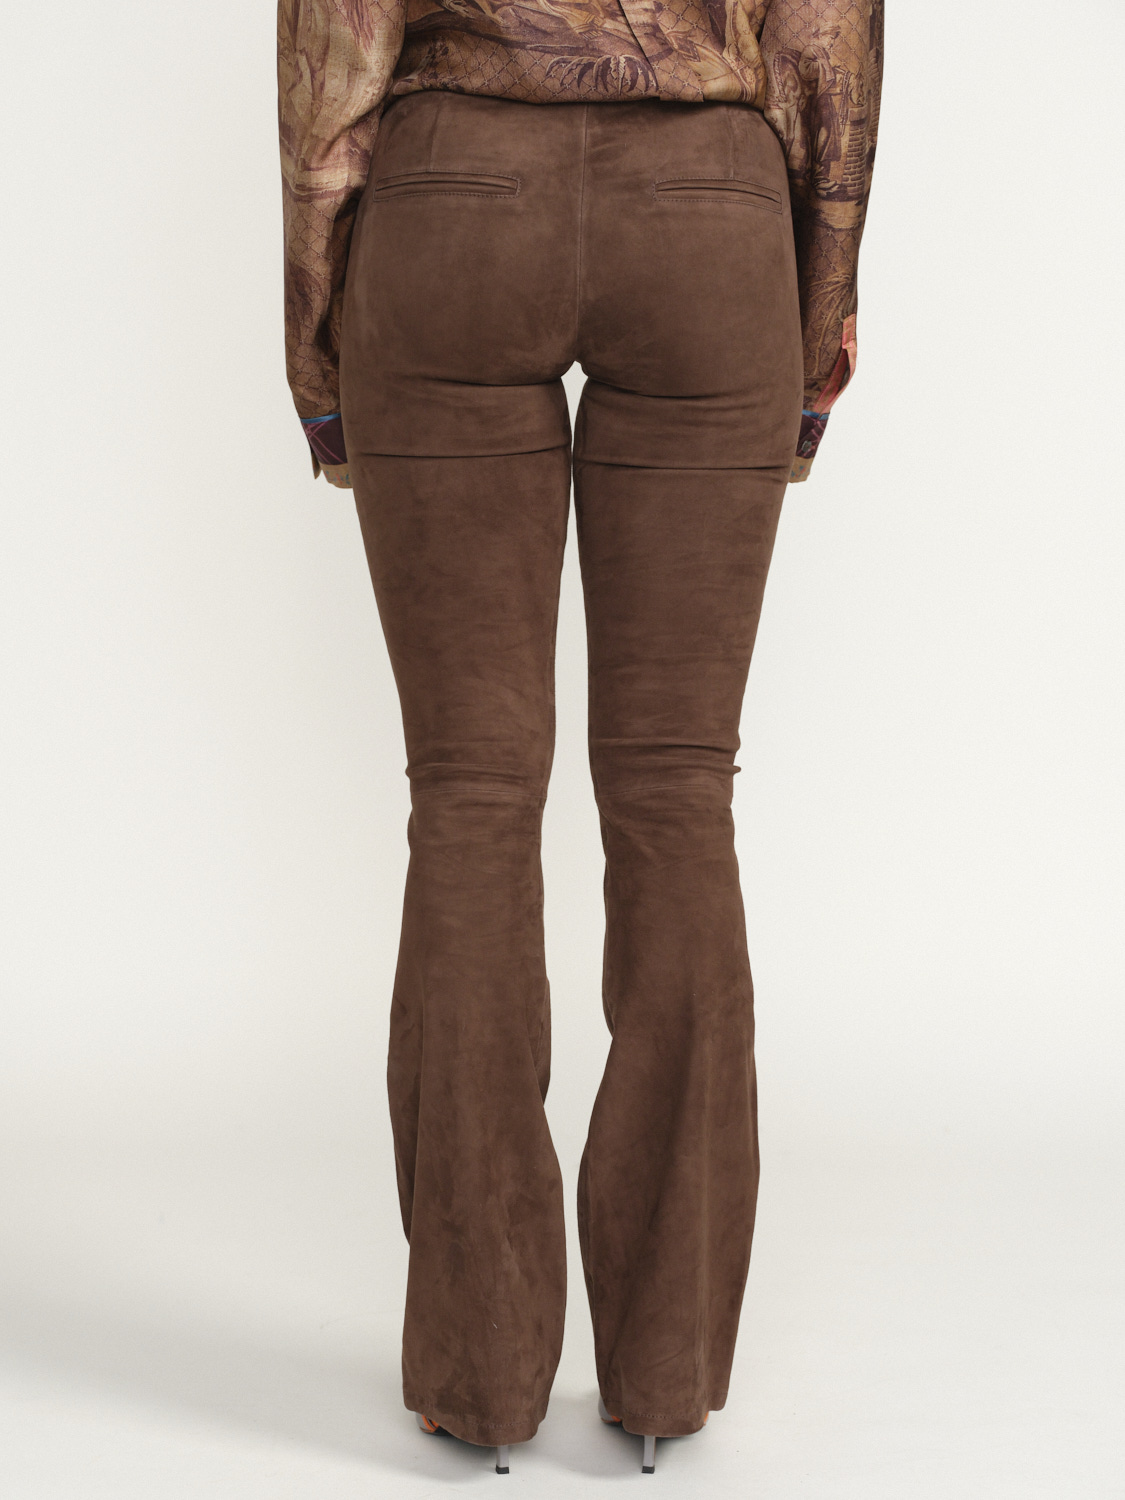 Arma Izzy - Pantalón con cintura elástica en piel de cordero Color: gris Talla: 34 marrón 34